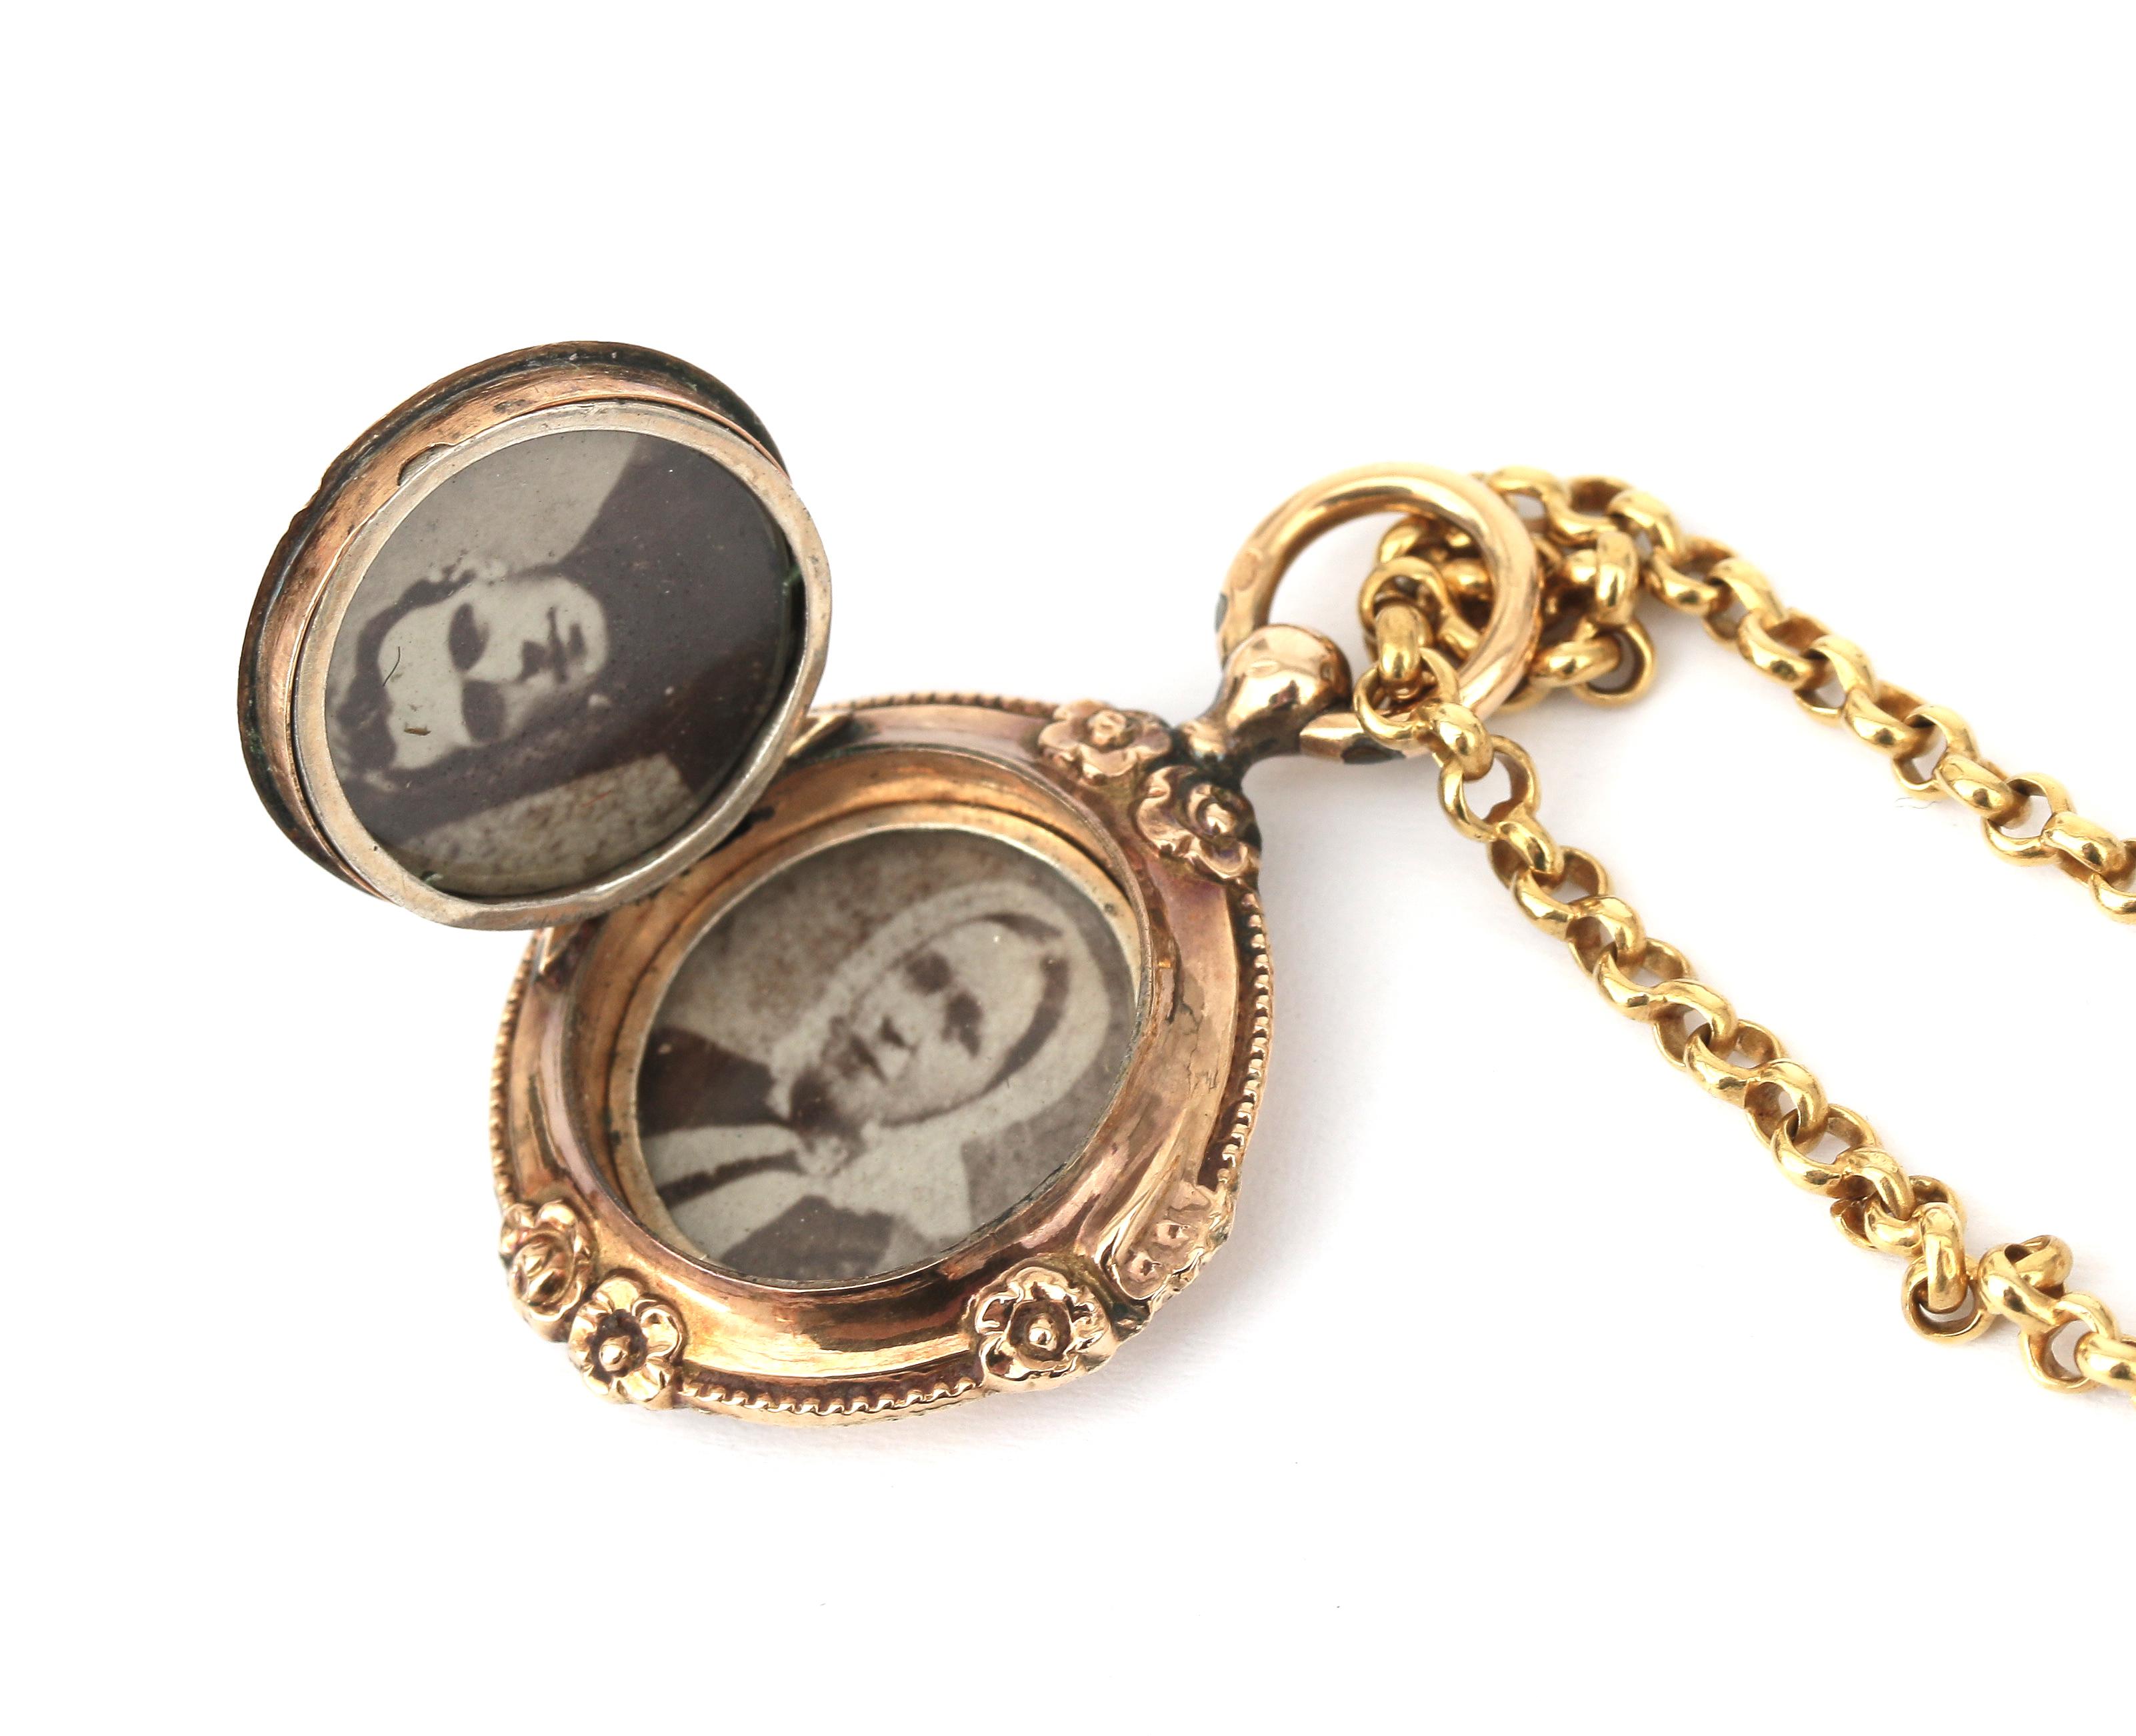 A 14 karat gold belcher necklace and a 14 karat gold locket - Image 4 of 4